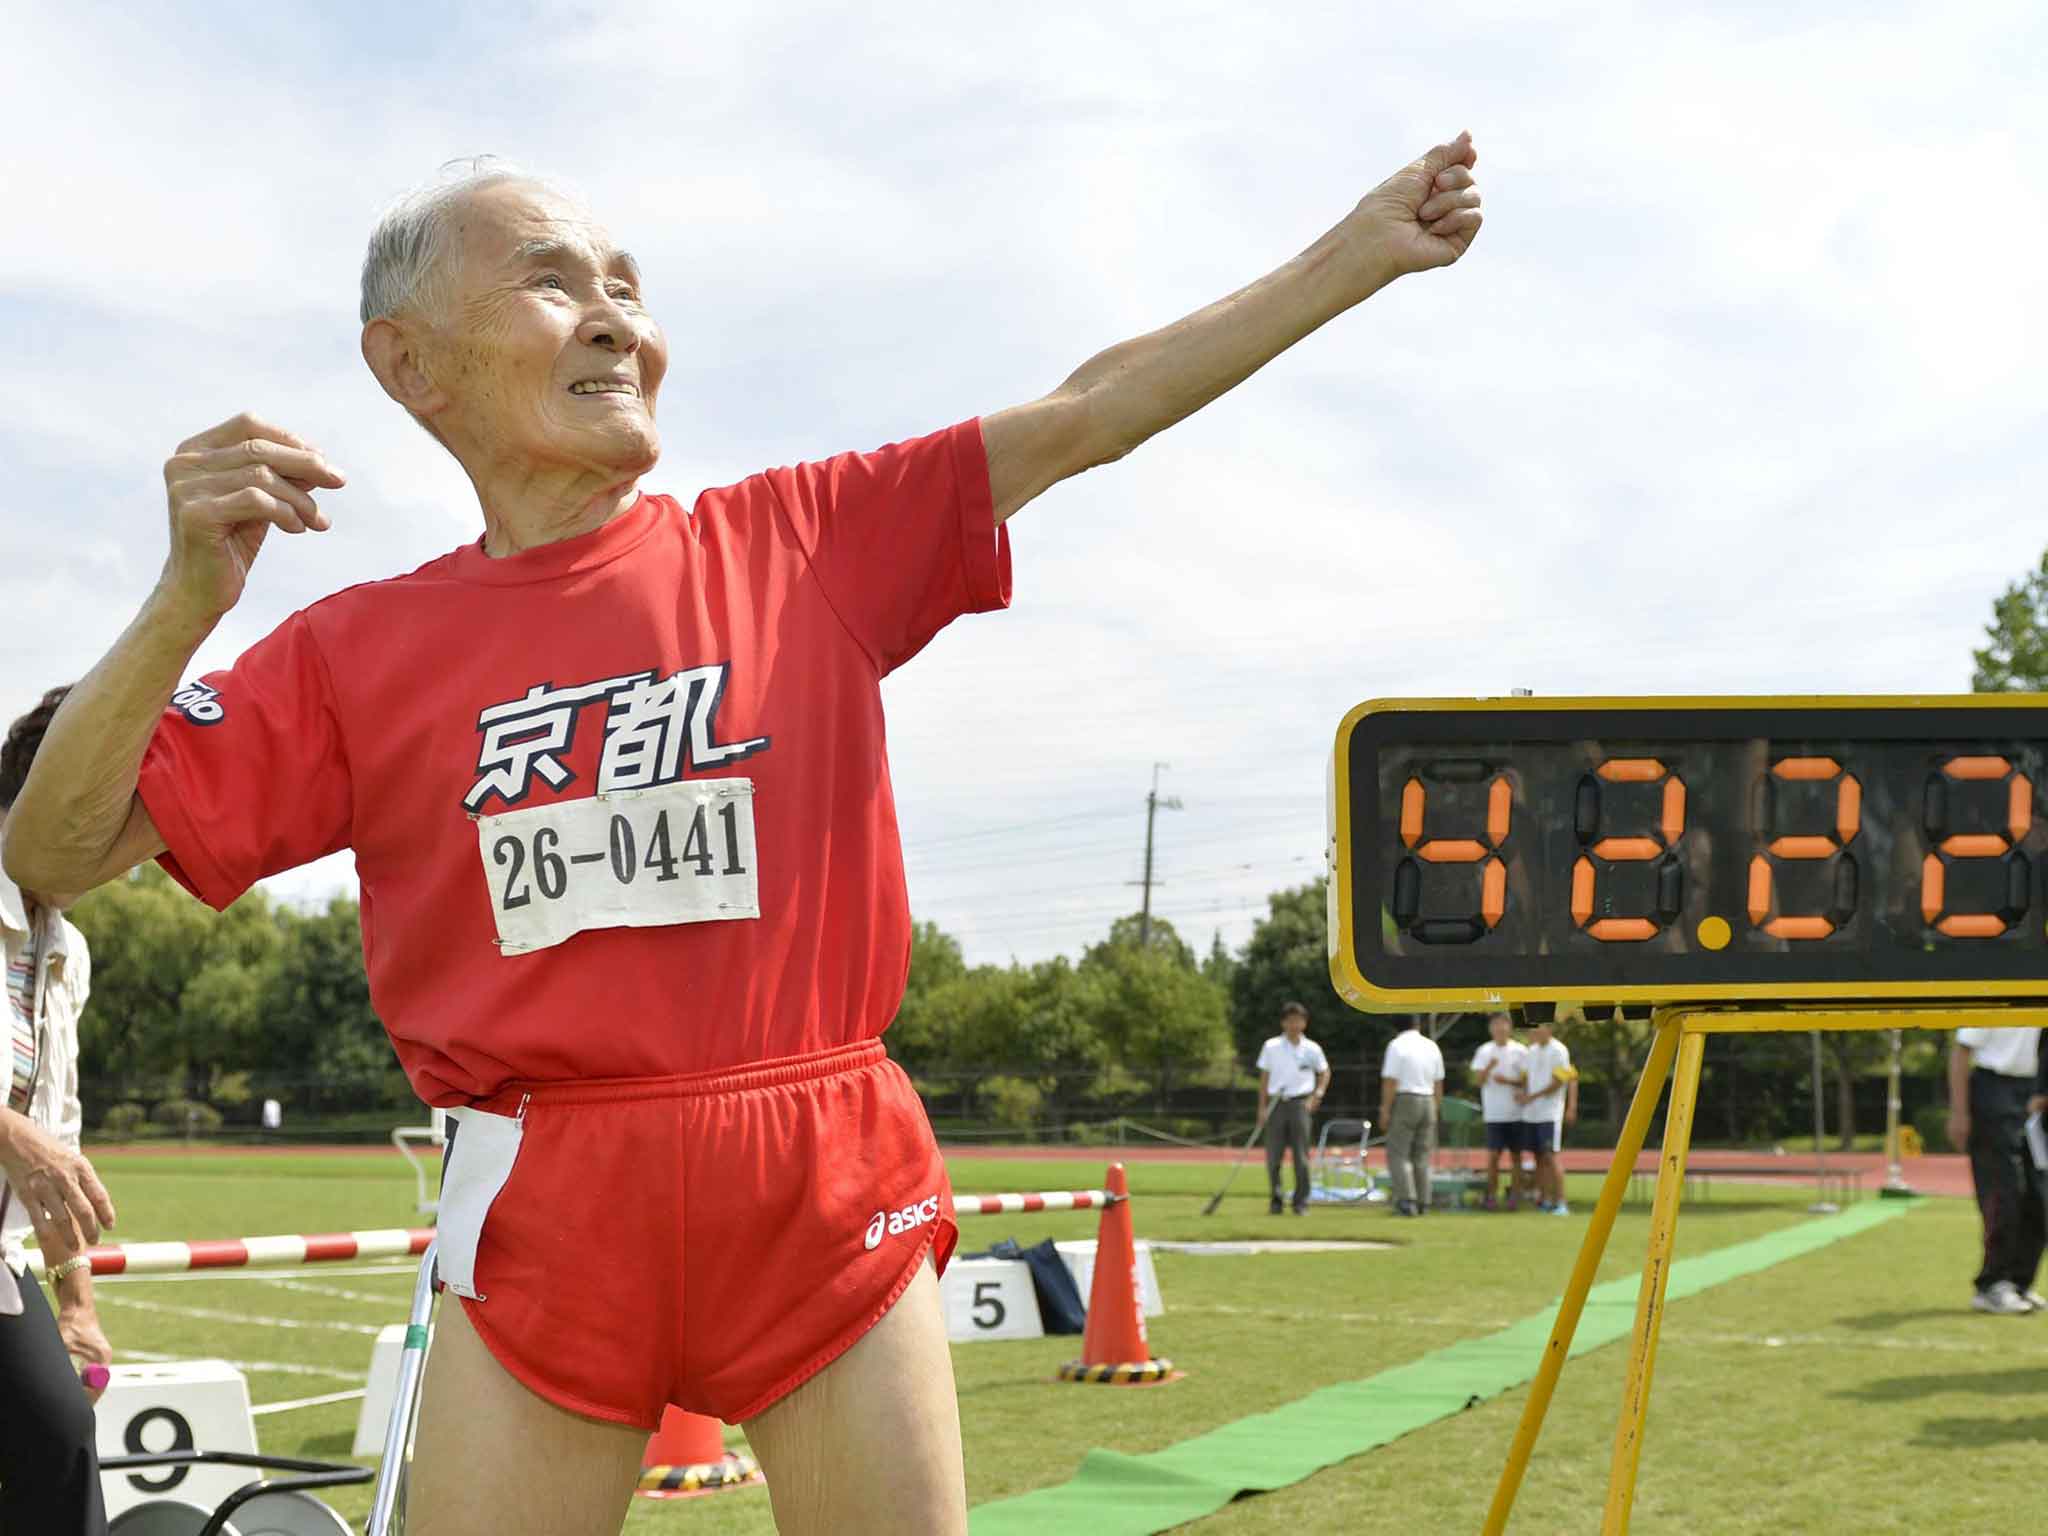 Hidekichi Miyazaki took up the sport in his 90s